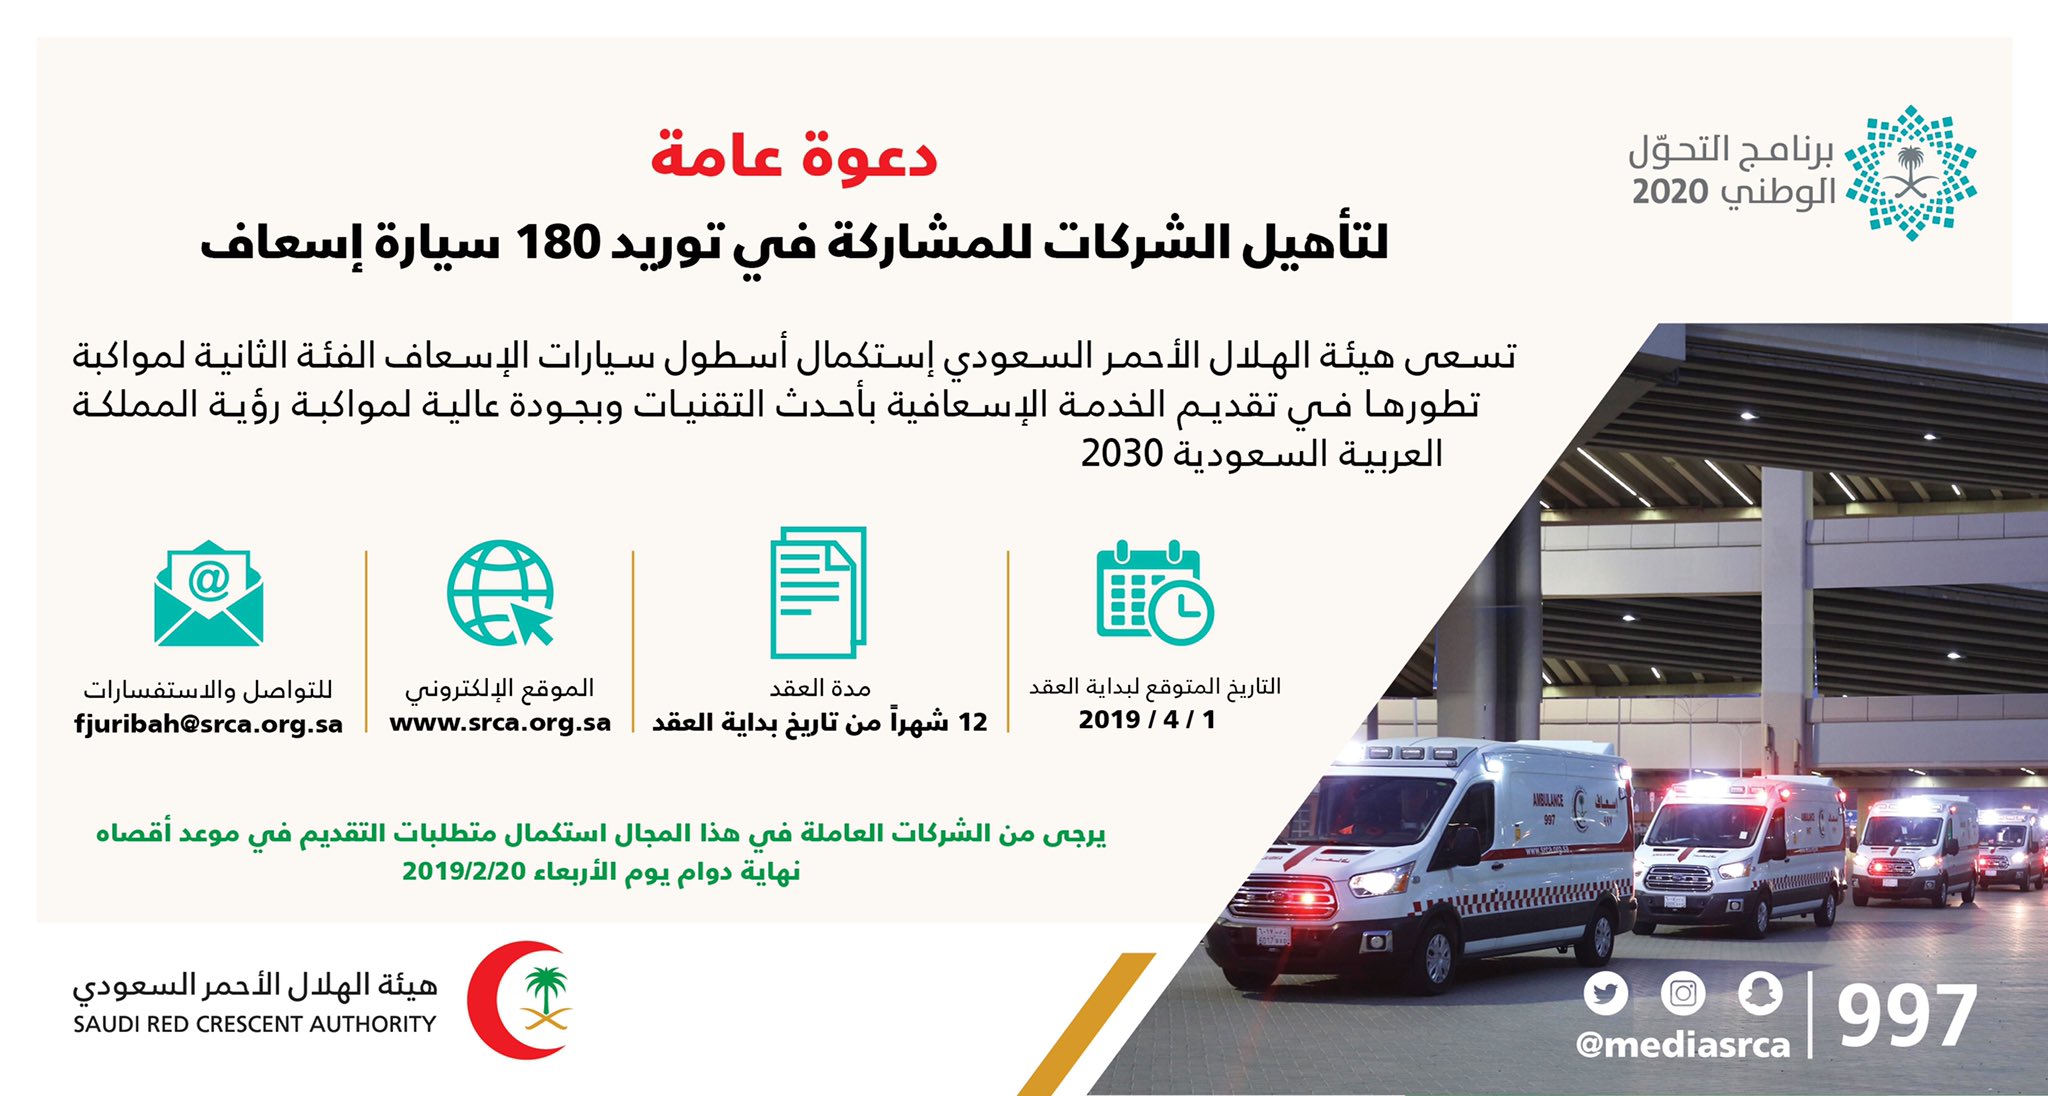 هيئة الهلال الأحمر السعودي A Twitter دعوة لتأهيل الشركات في توريد 180 سيارة إسعاف للاطلاع على التفاصيل عبر الرابط التالي Https T Co Hamonwgxcu